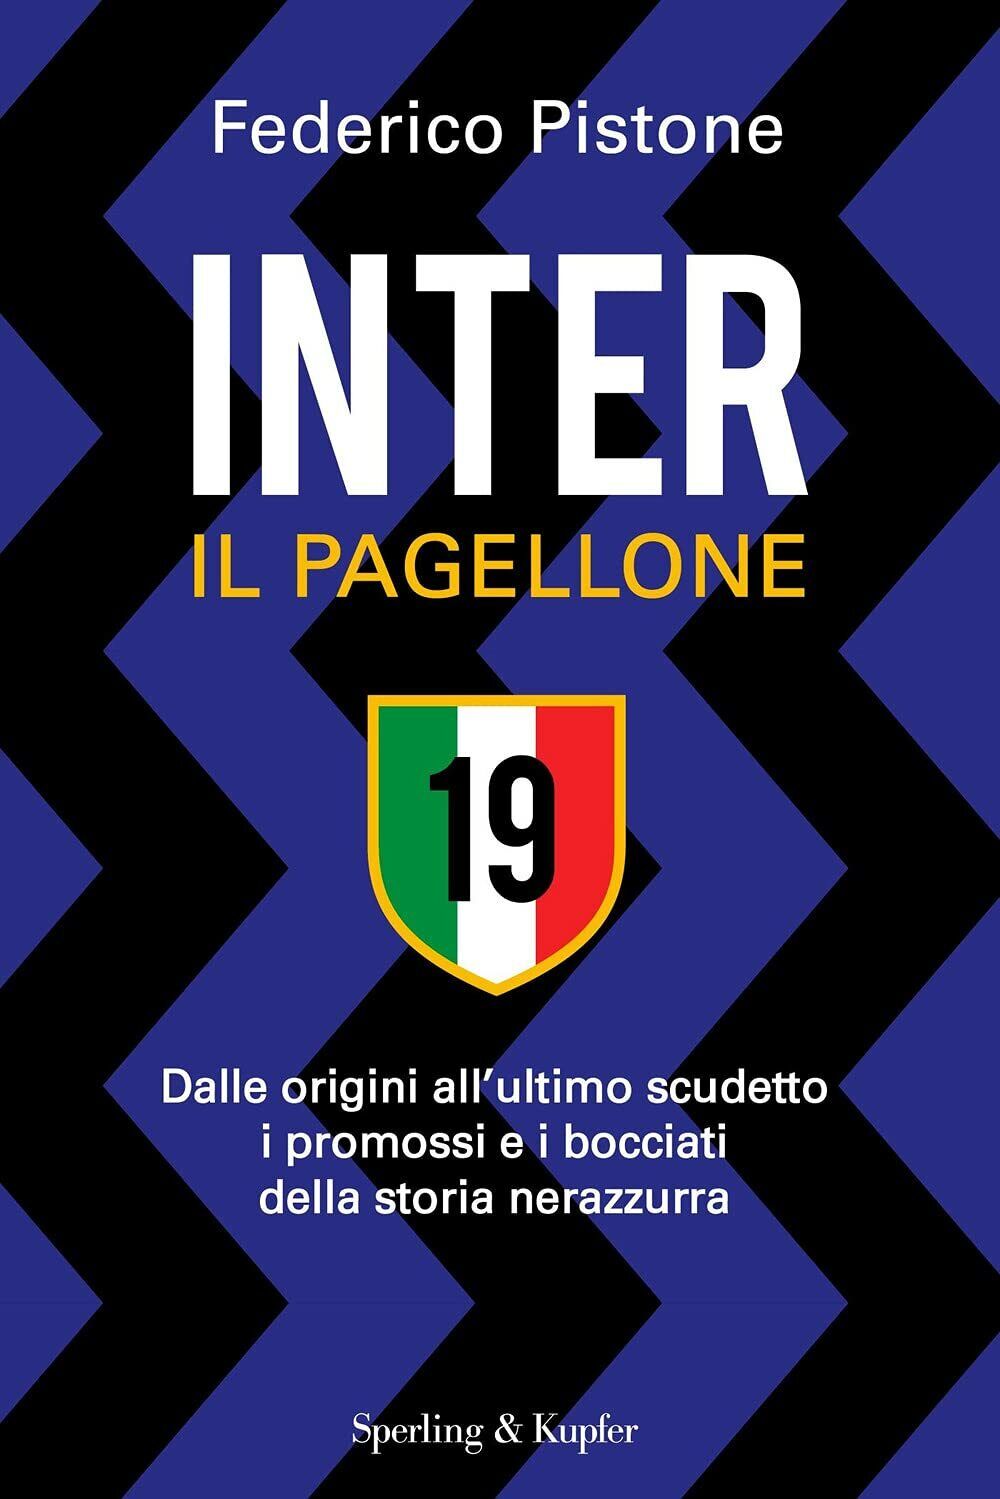 Inter il pagellone - Federico Pistone - Sperling & Kupfer, 2021 libro usato